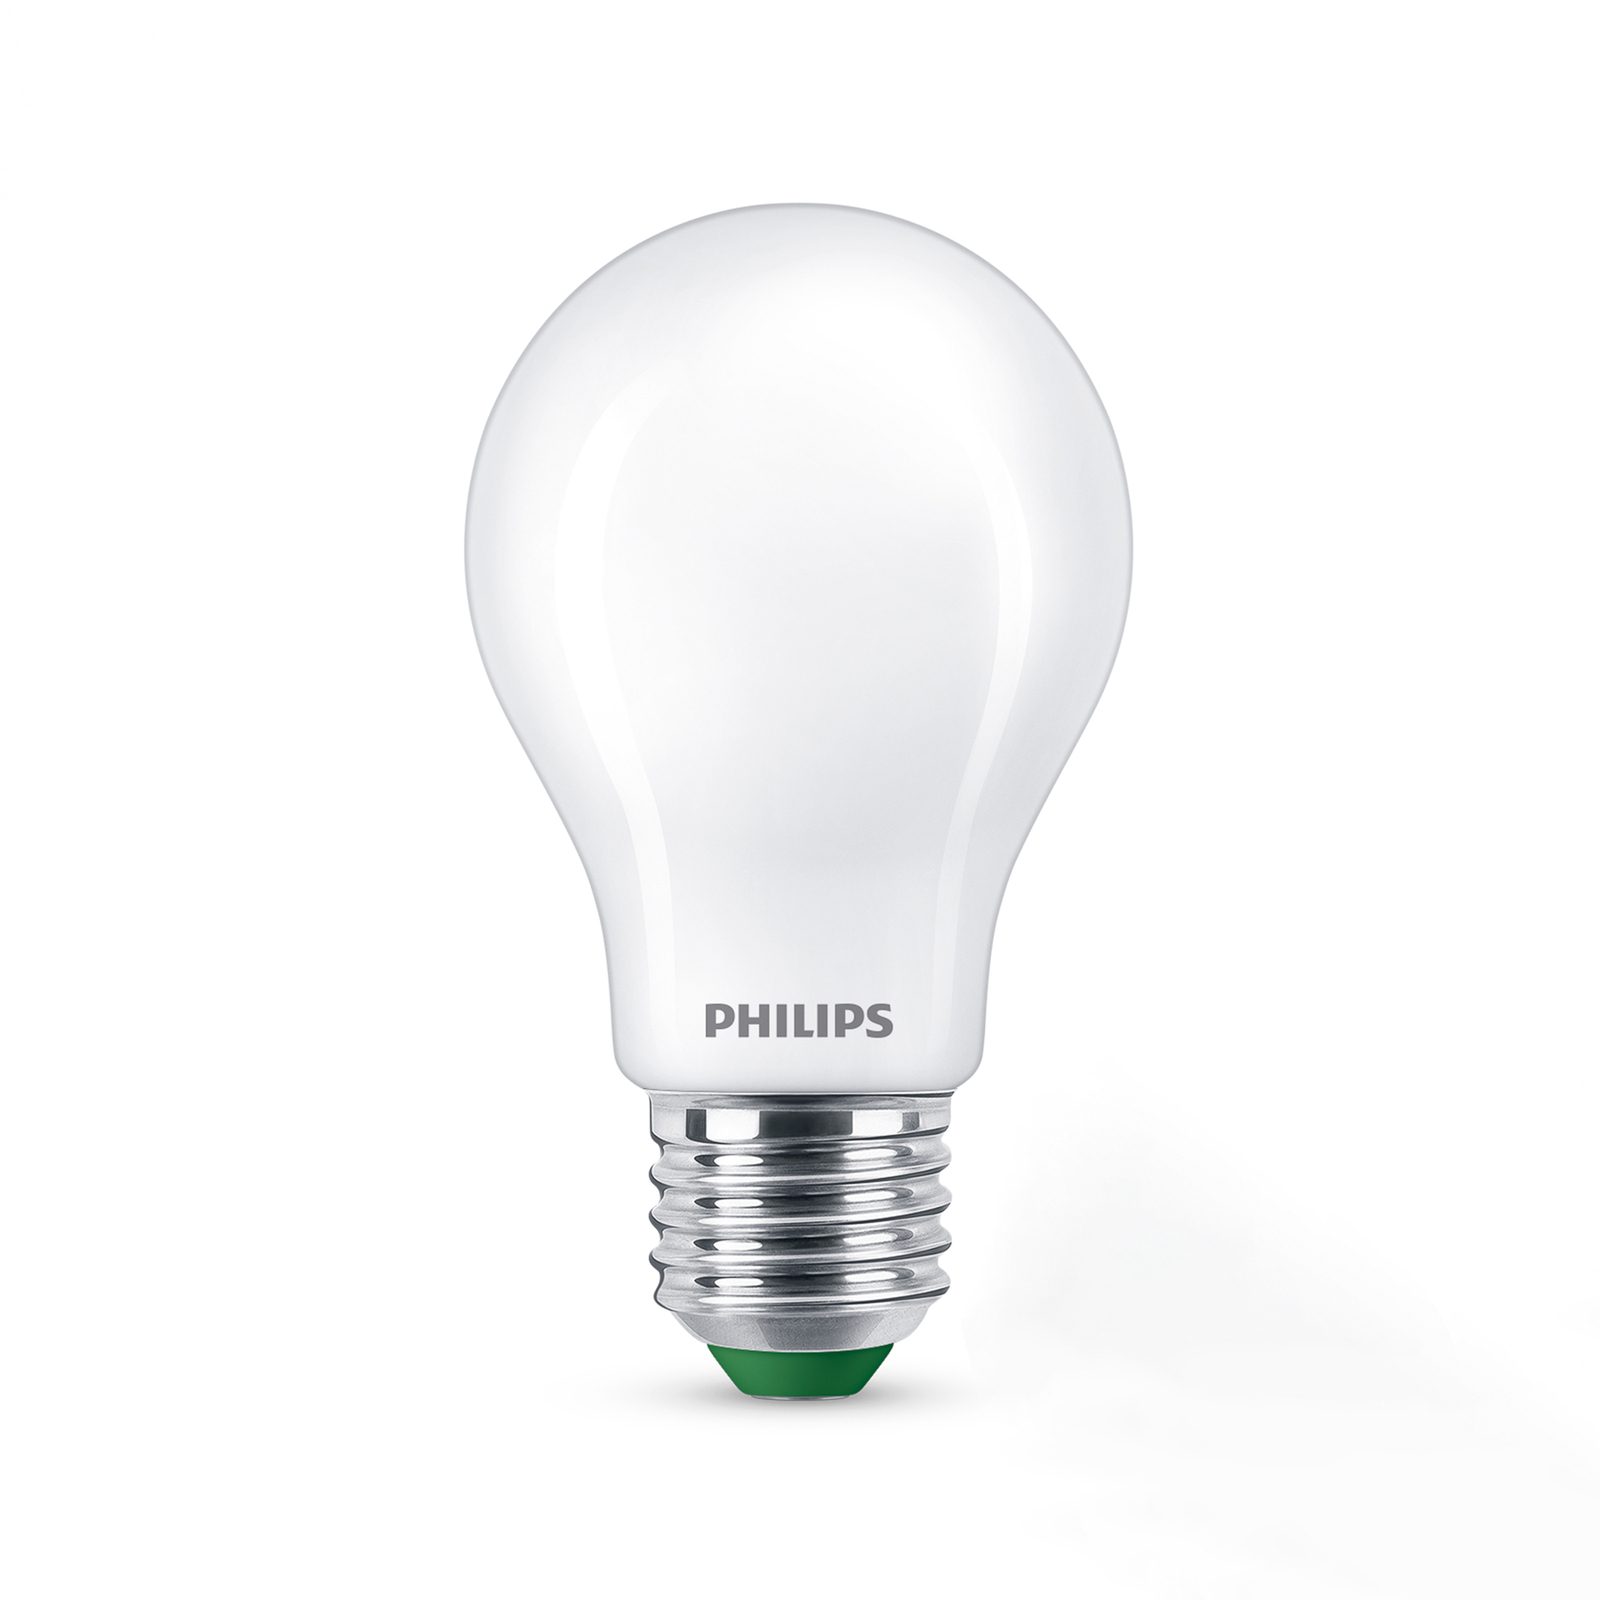 Philips LED E27 A60 4 W 840 lm mate 3 000 K